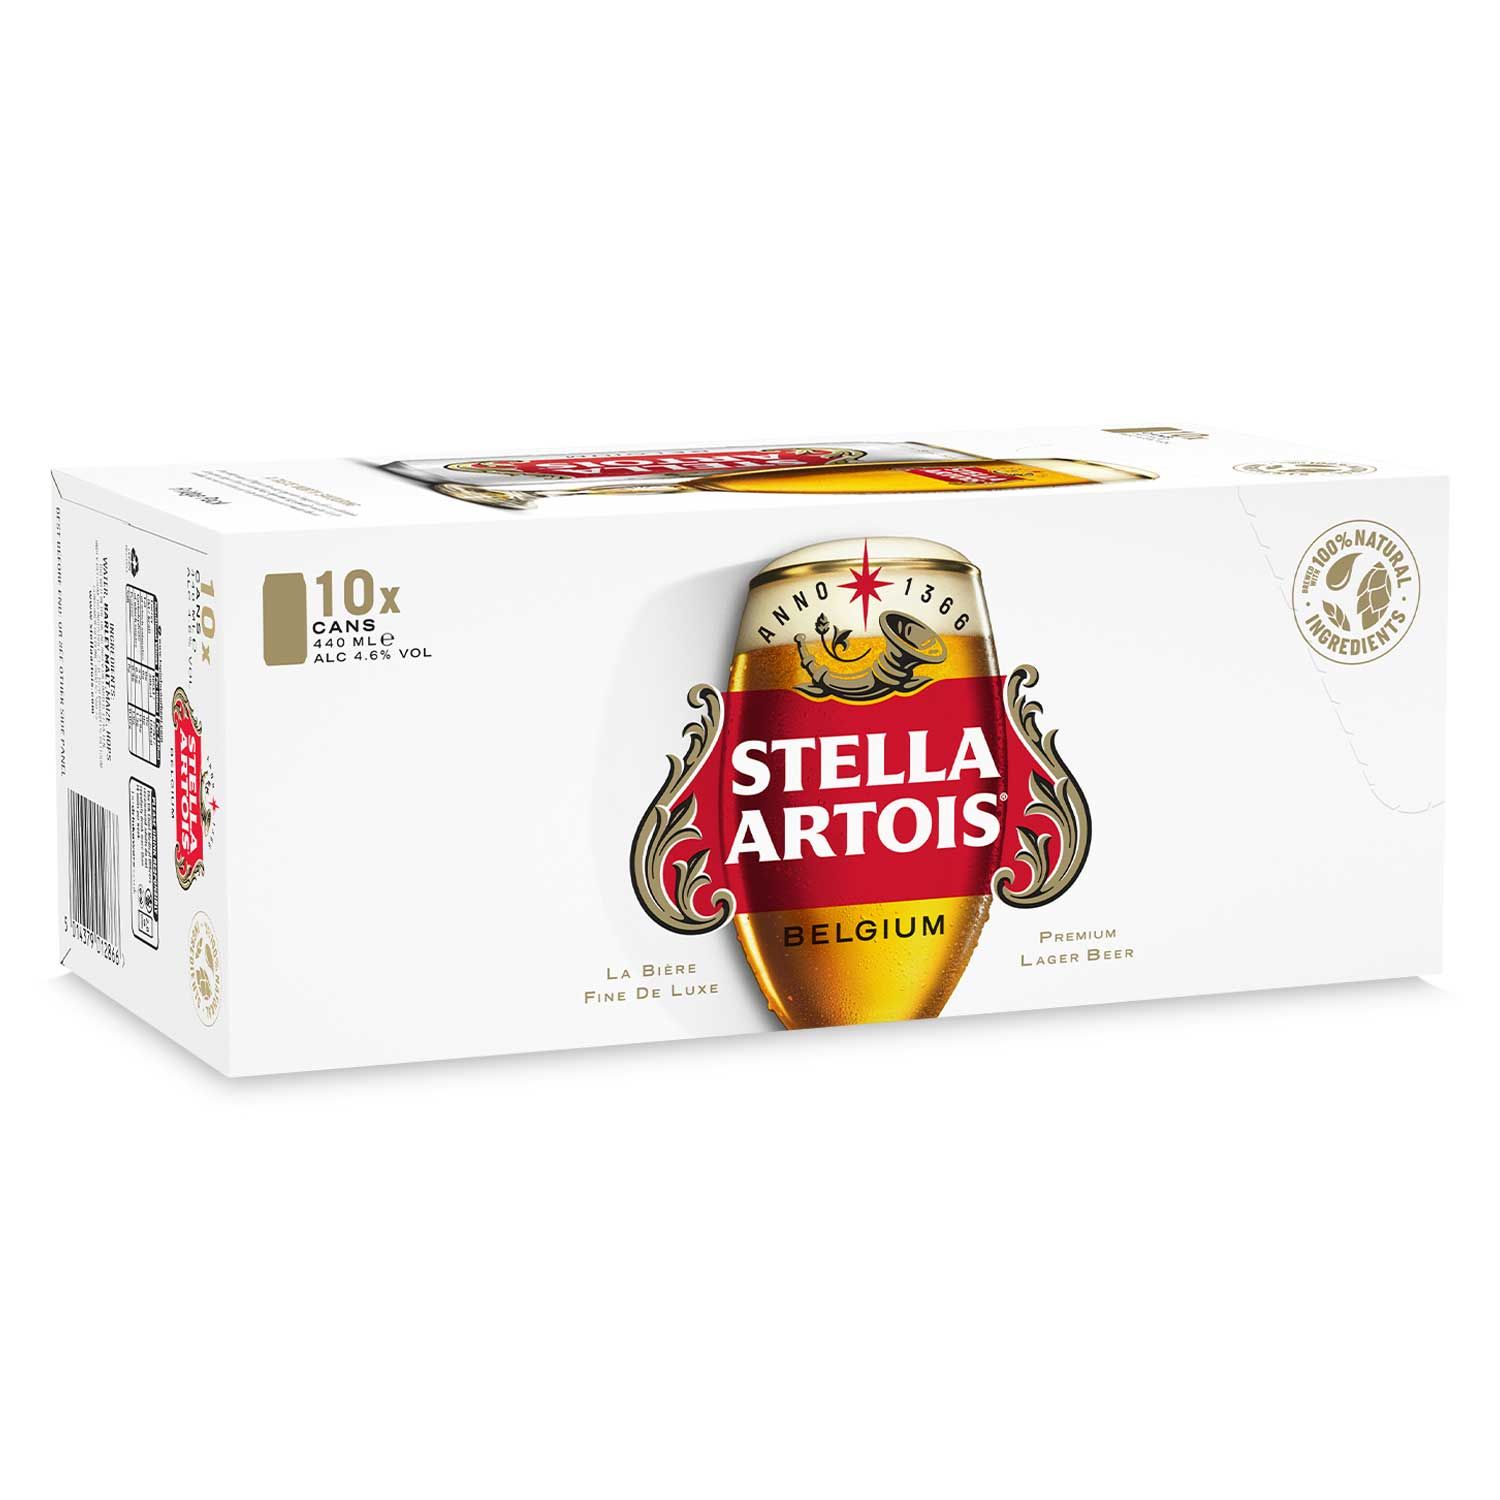 Stella Artois Belgium Premium Lager Beer Cans 10x440ml | ALDI